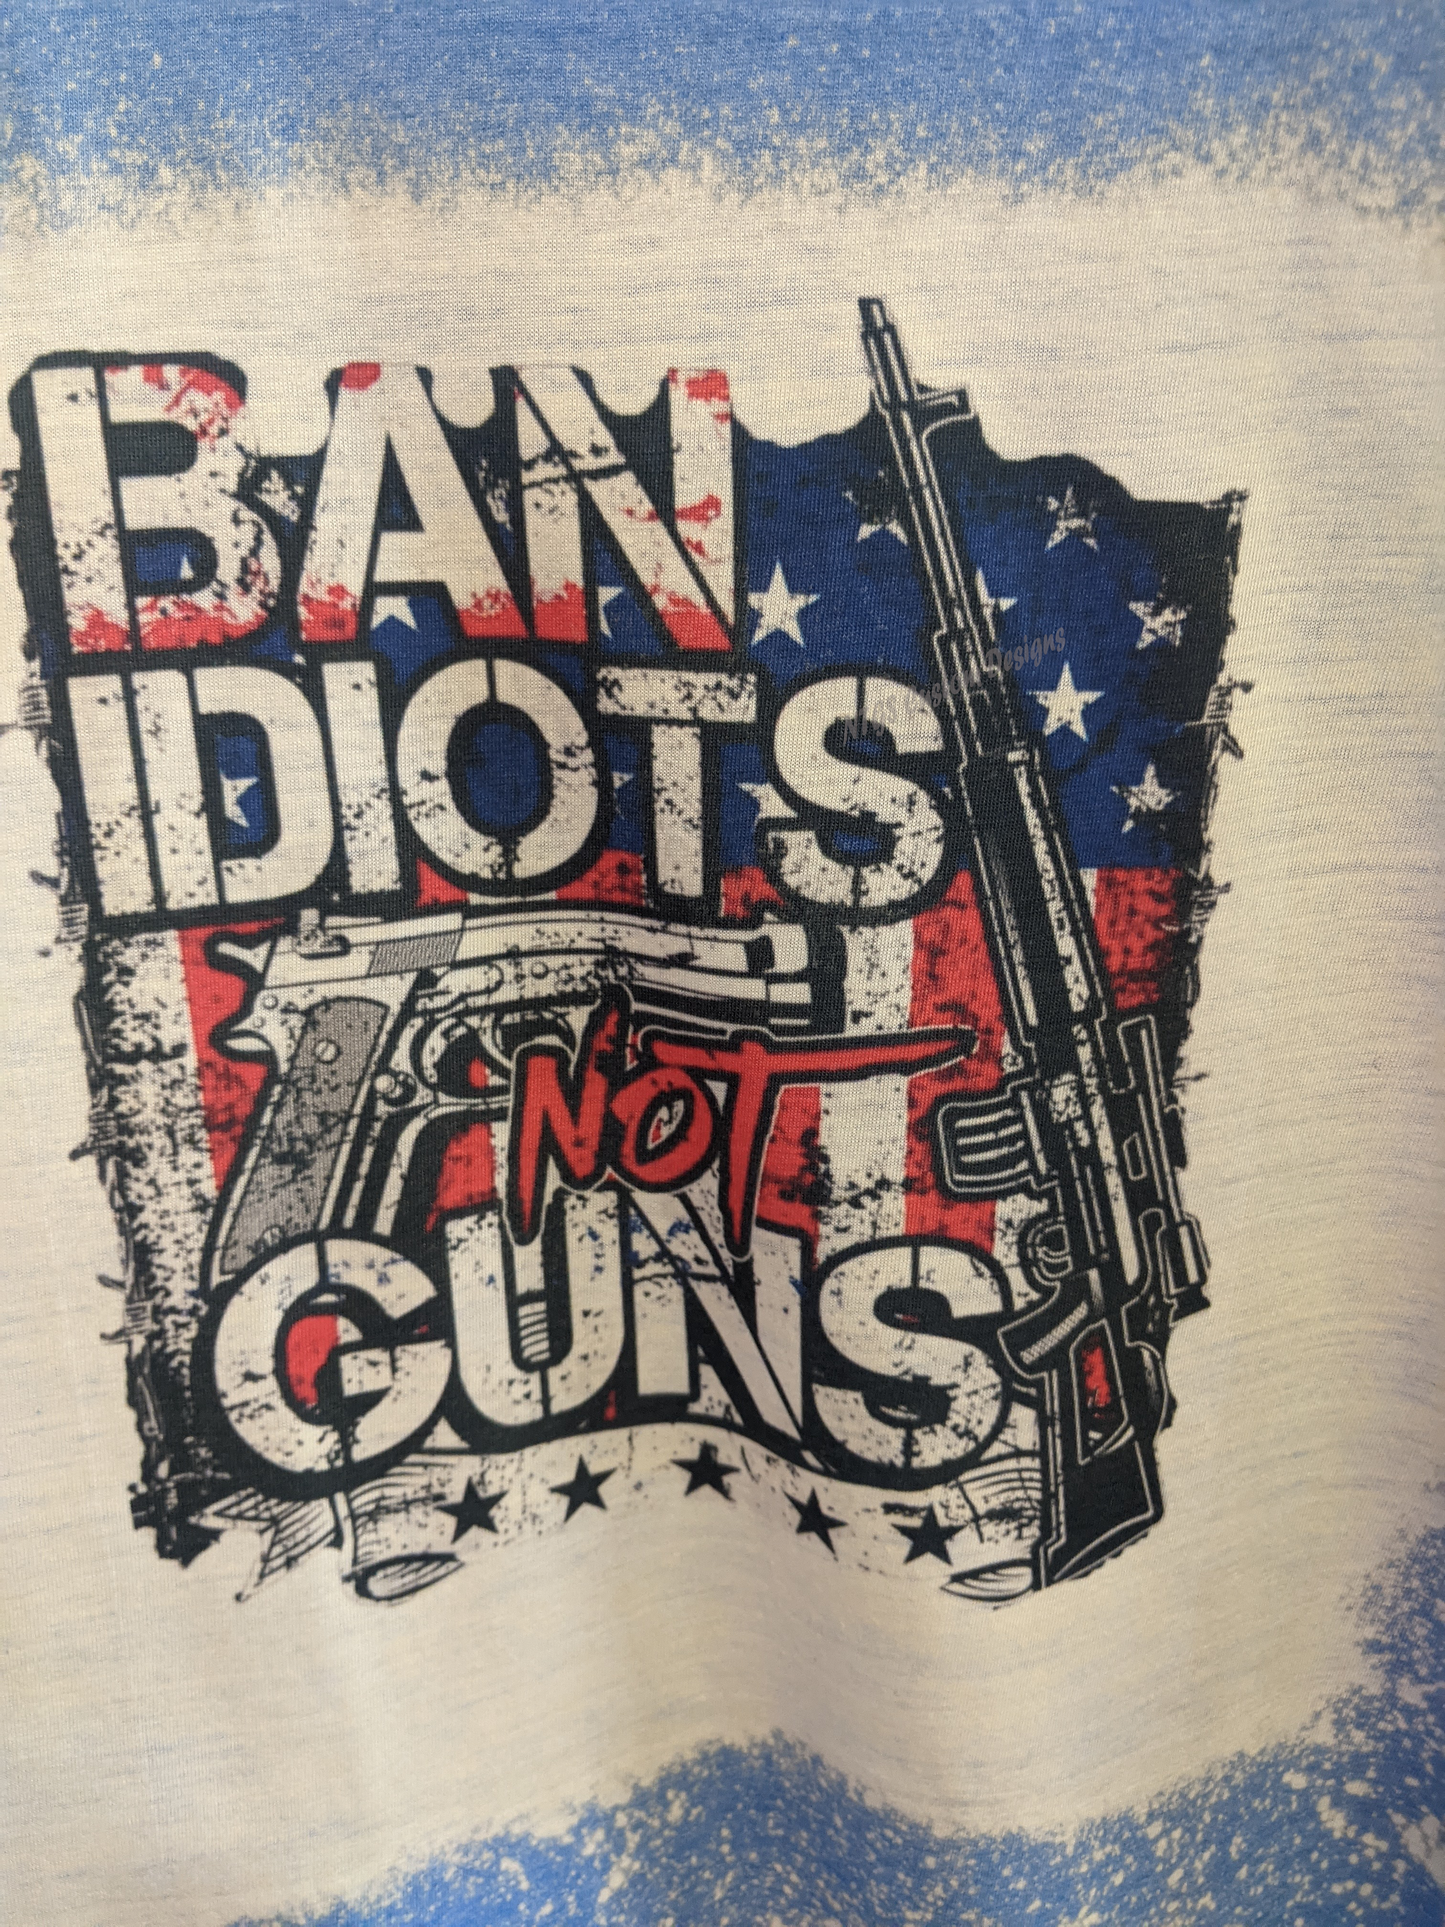 Ban Idiots not Guns